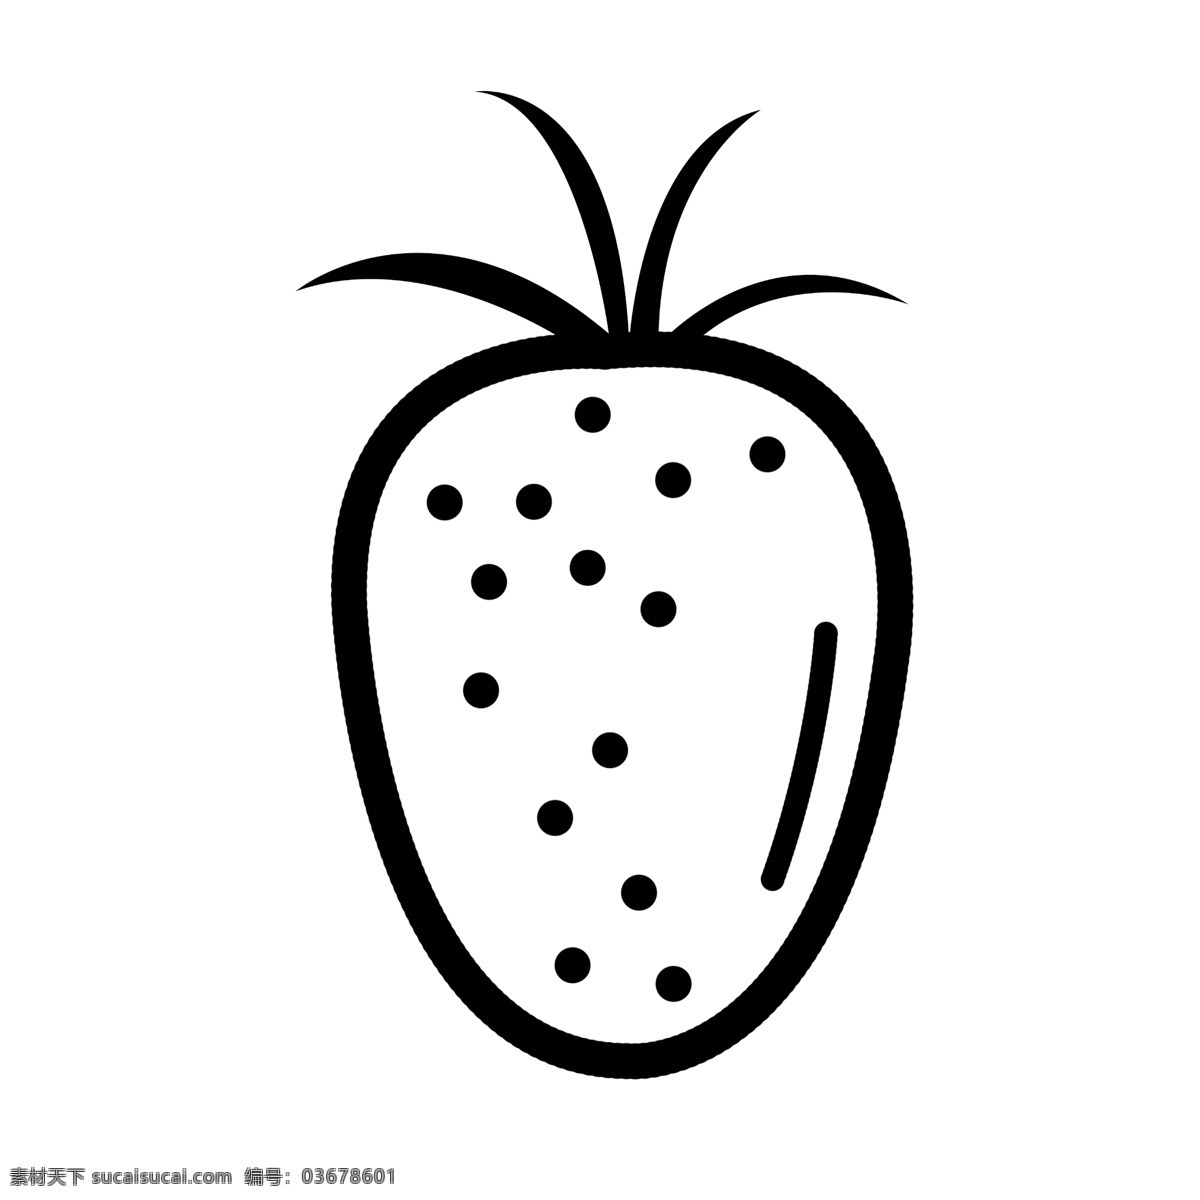 水果 图标 元素 草莓 ppt图标 简约风格 水果图标 海报图标 草莓水果 免 扣 图案